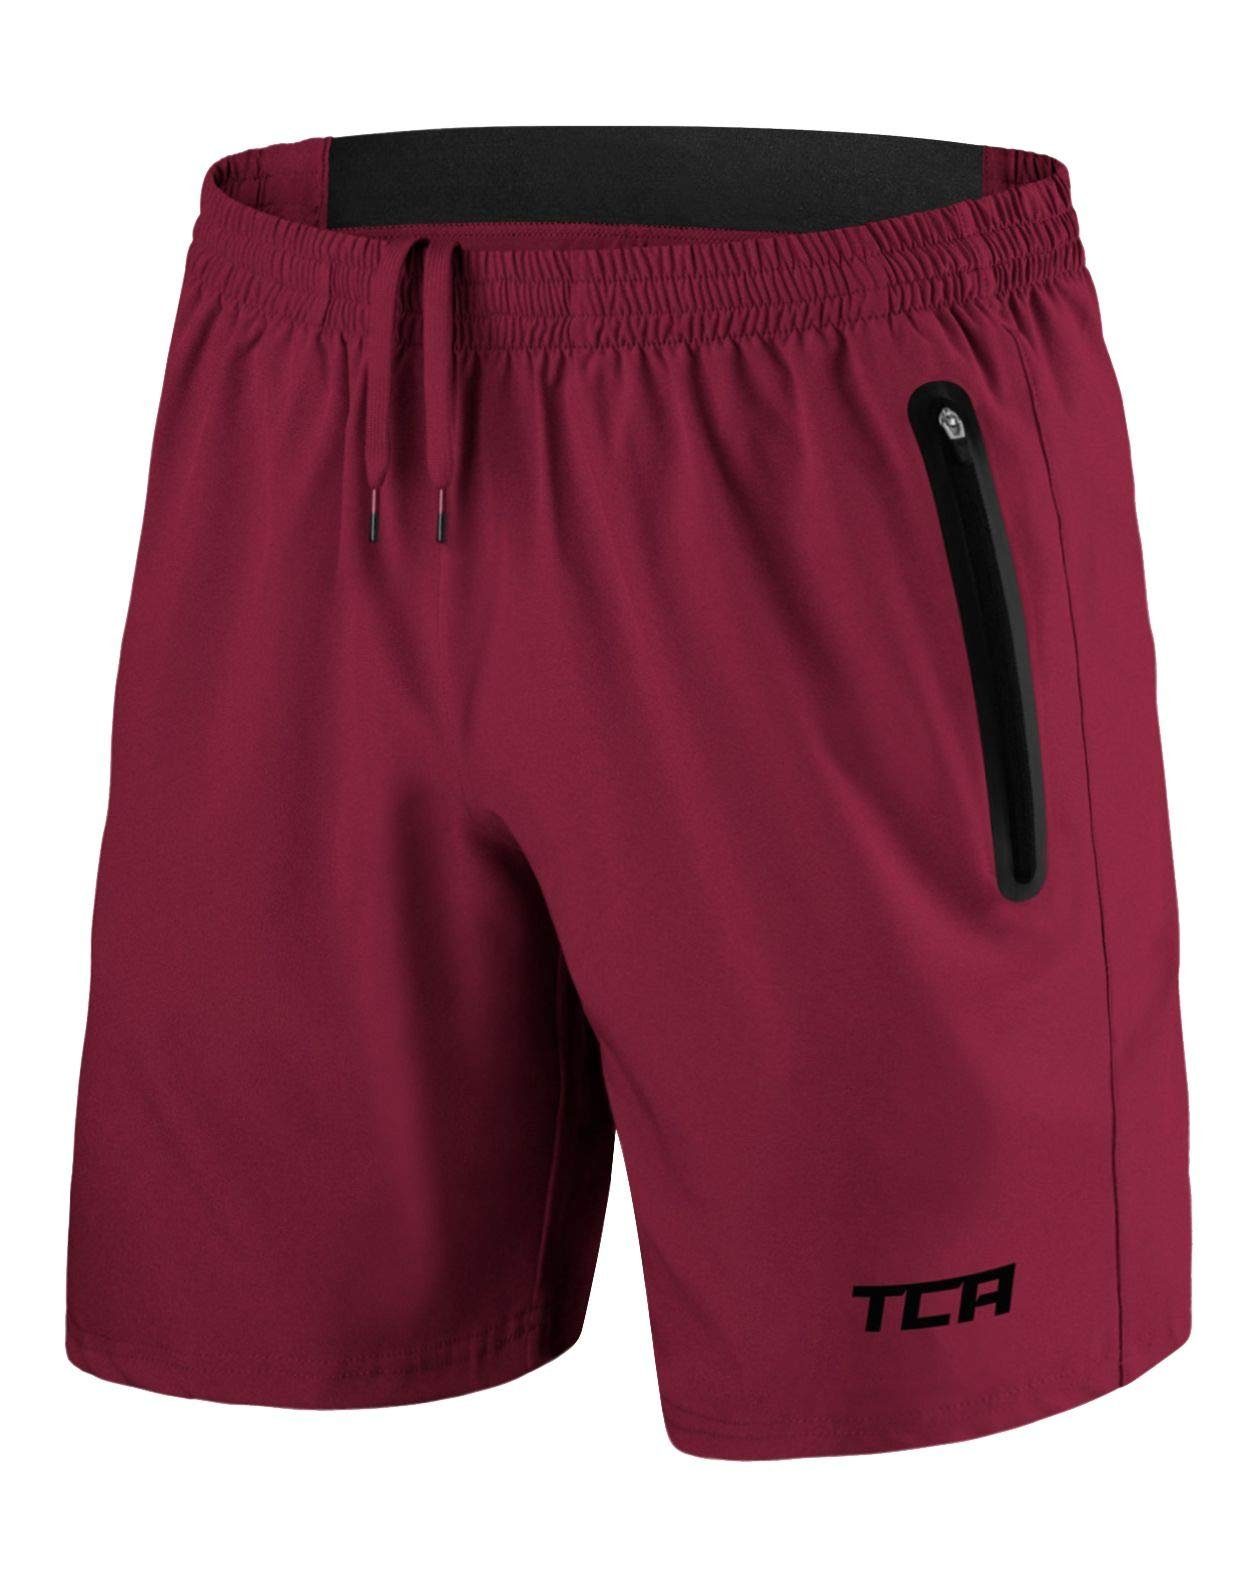 TCA Trainingsshorts TCA Herren Elite Tech Laufhose mit Reißverschlusstaschen - Rot, XS